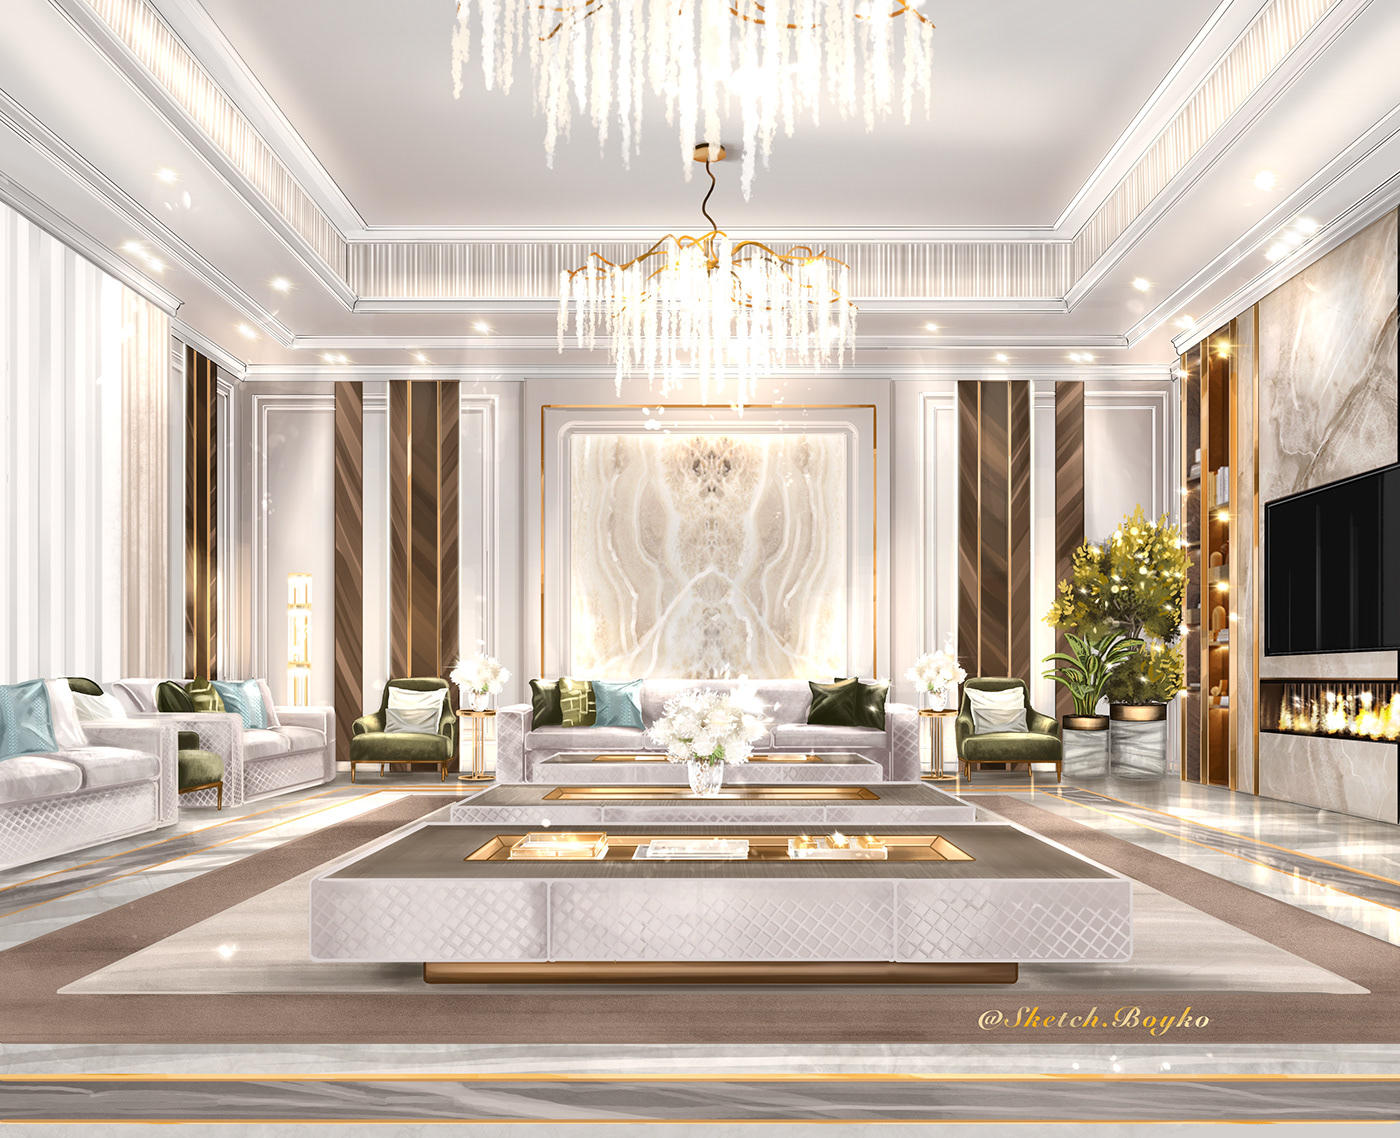 Luxury Villa on Behance